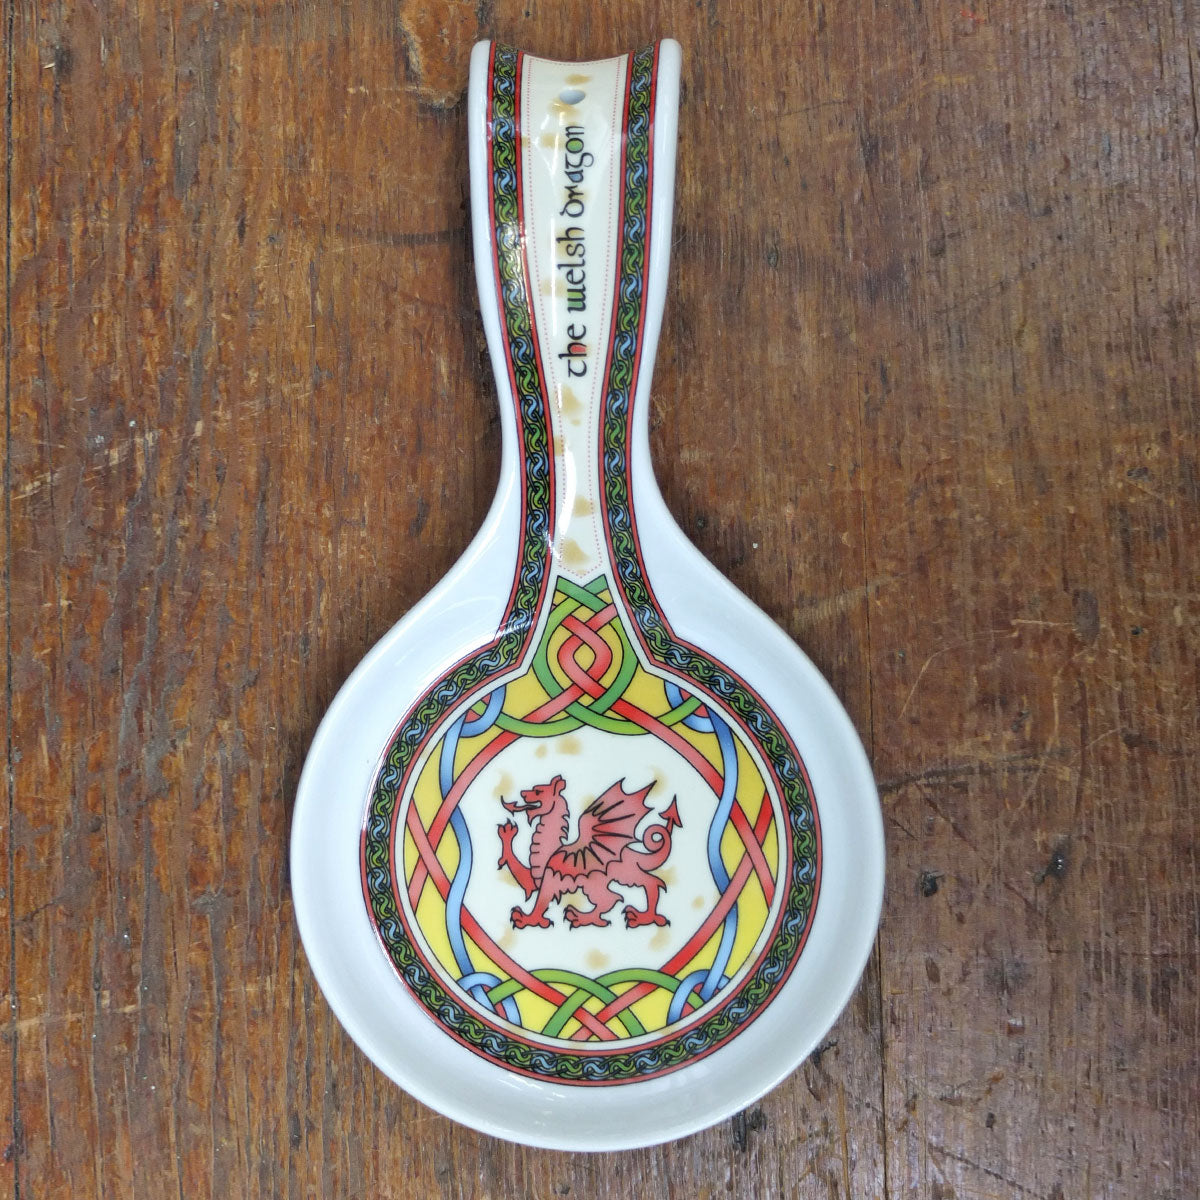 Welsh Weave Spoon Rest